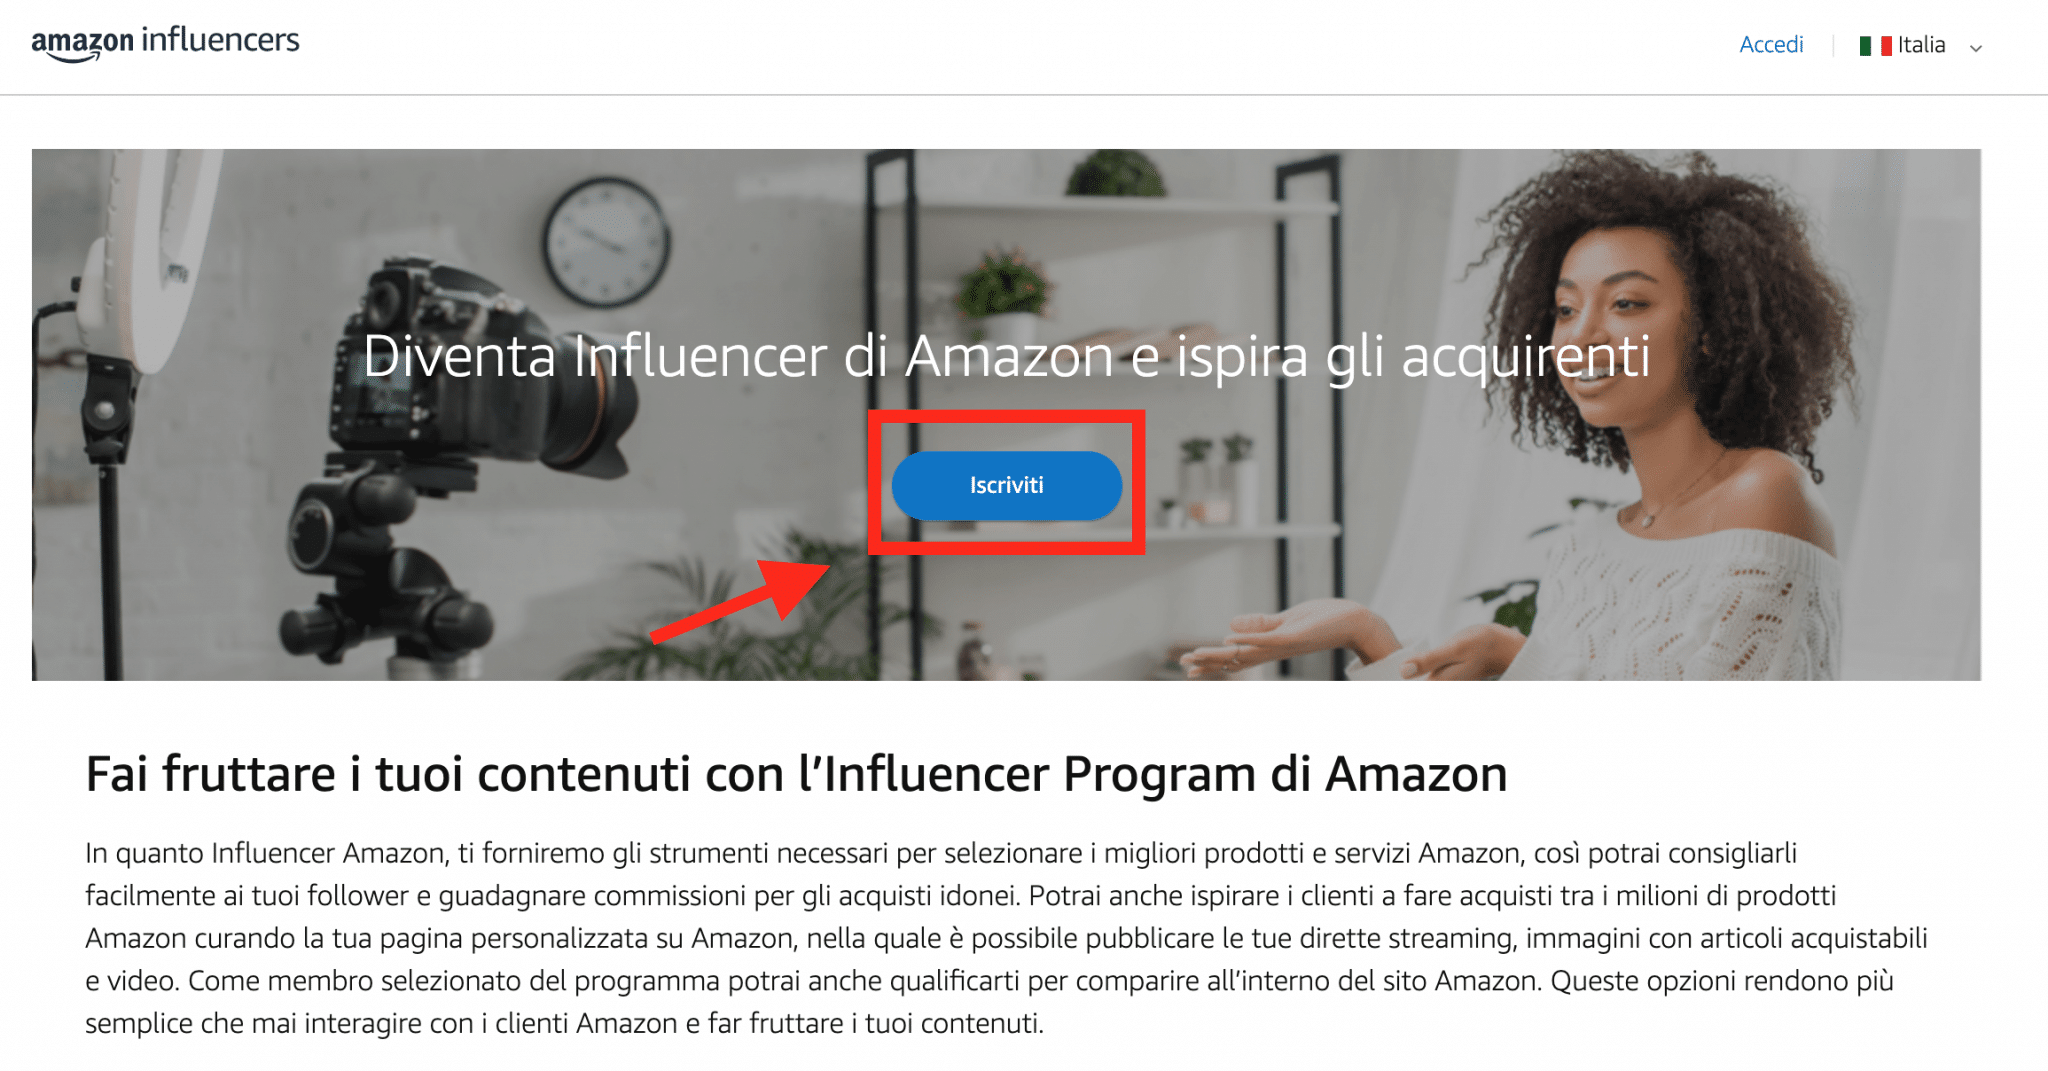 Il programma Amazon influencer inizia da qui